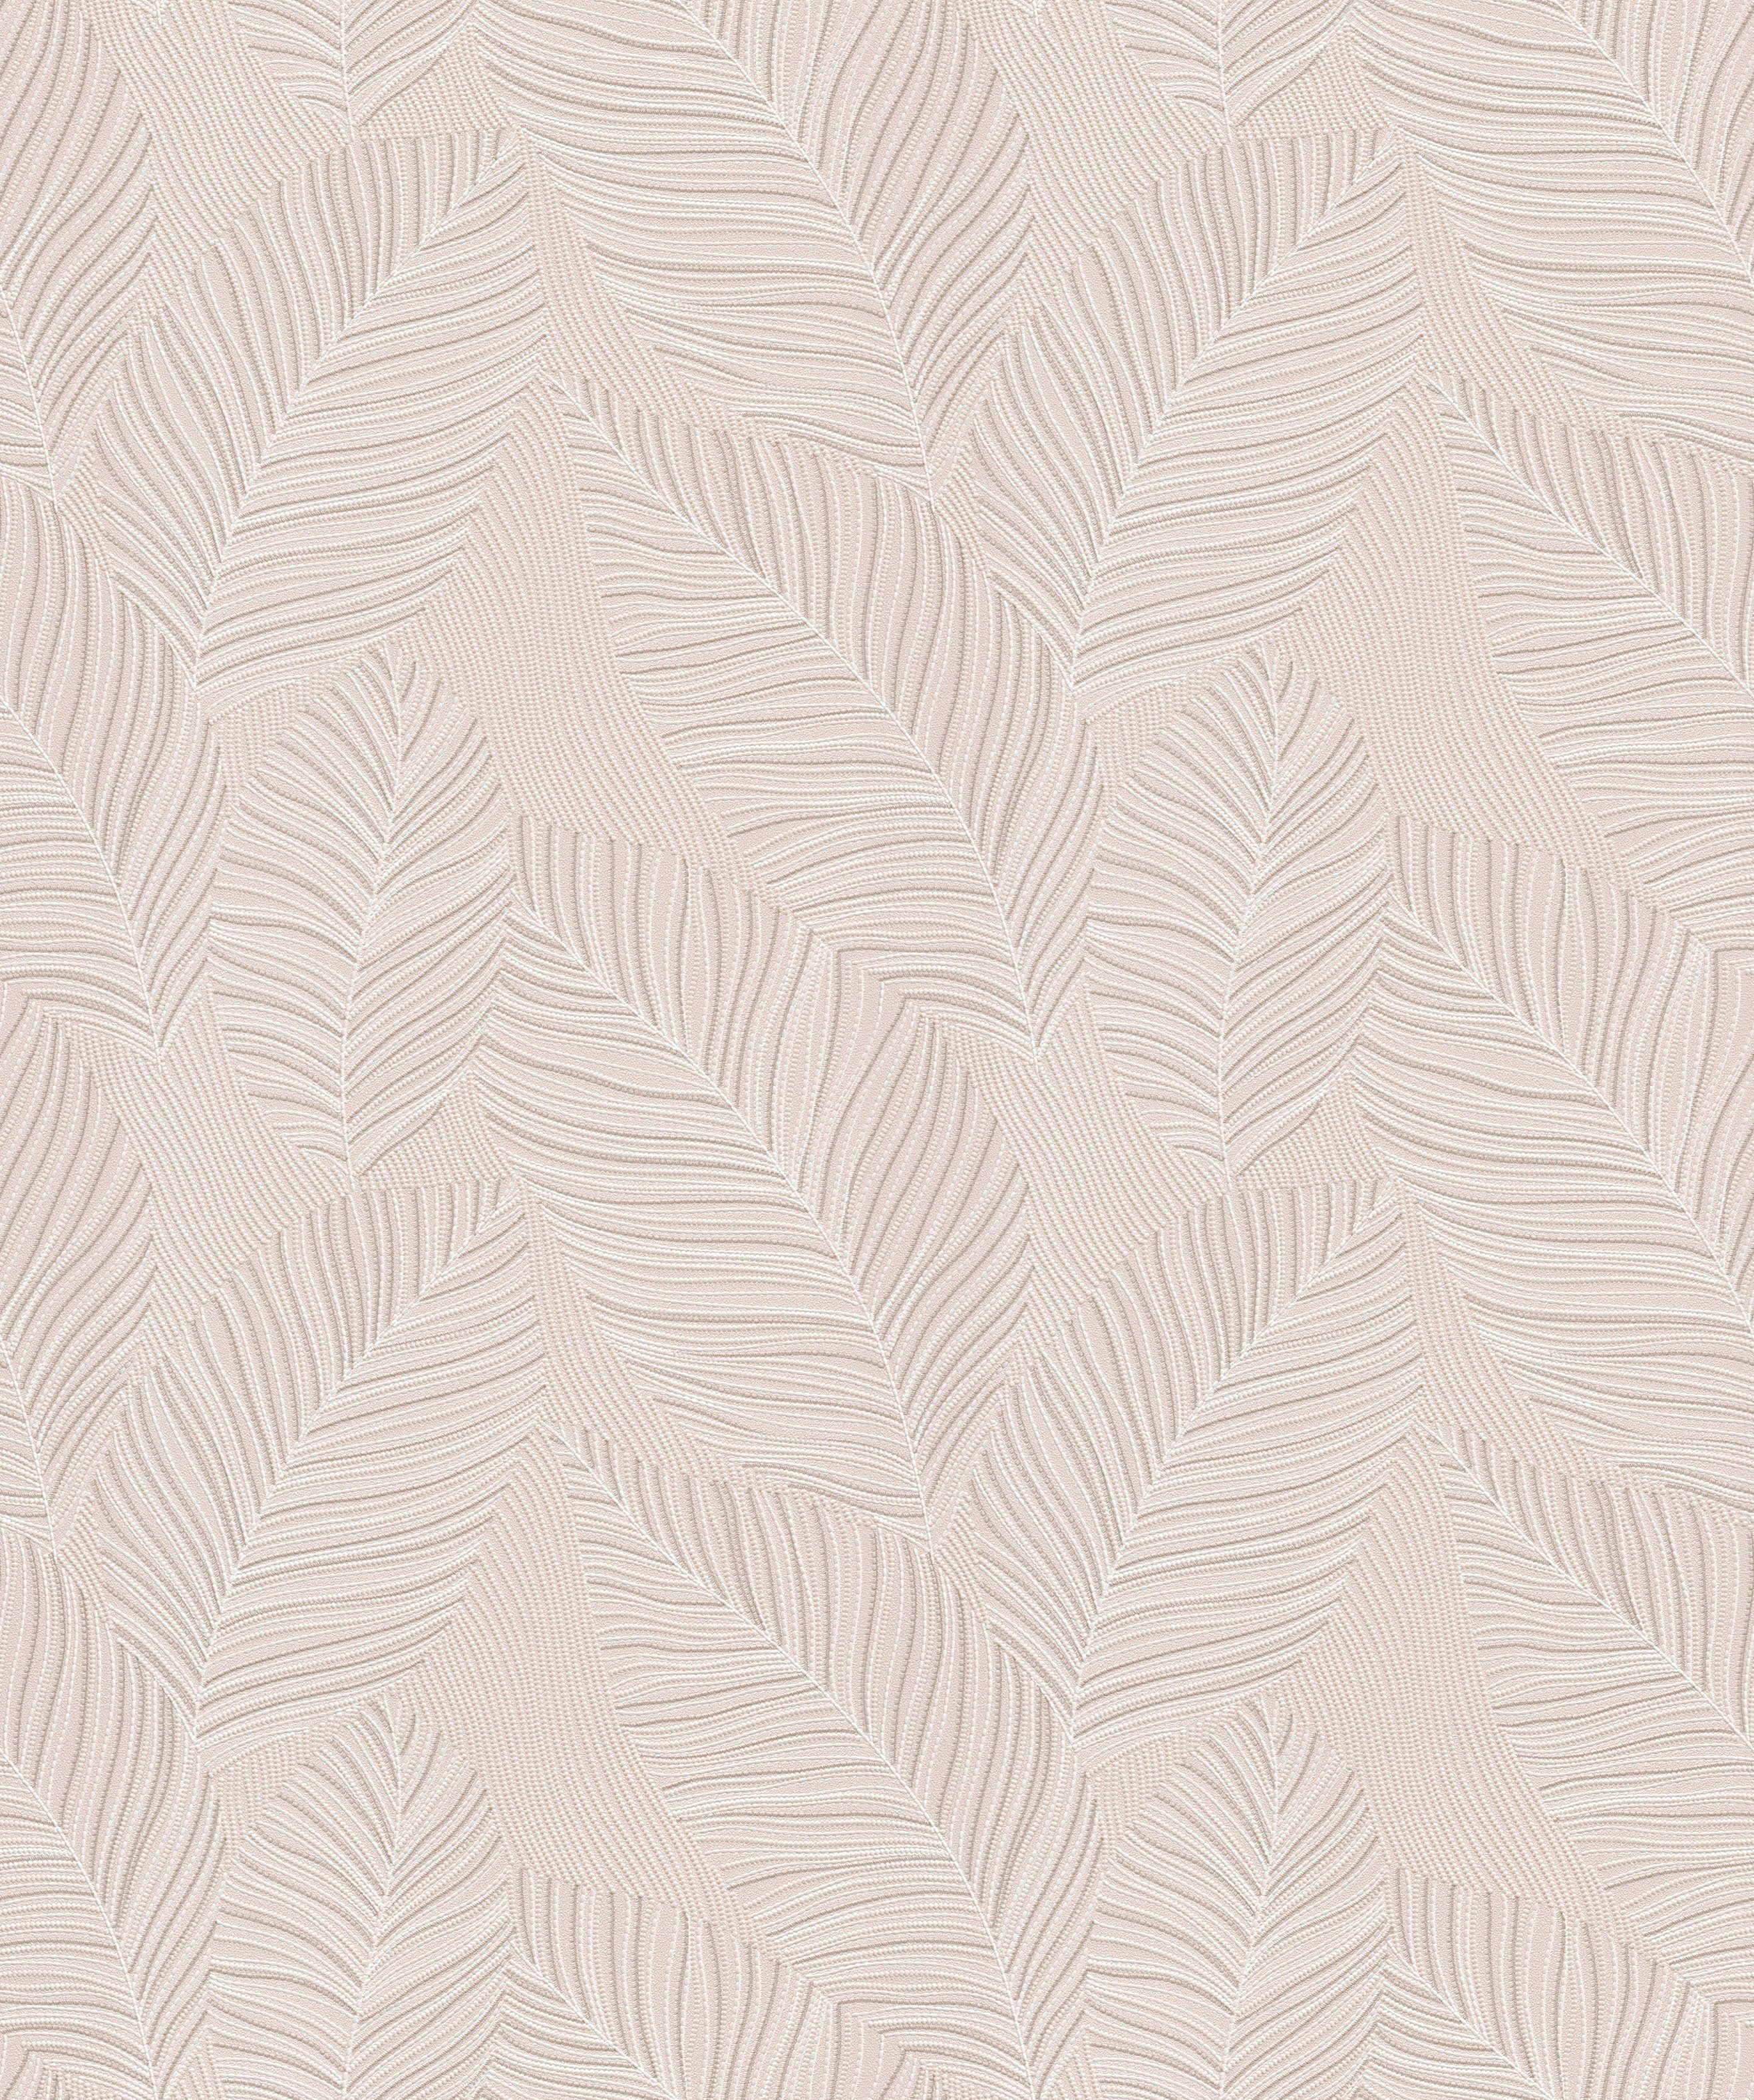 Erismann Vliestapete Paradisio 2, 10,05 x 0,53m Muster/Motiv beige